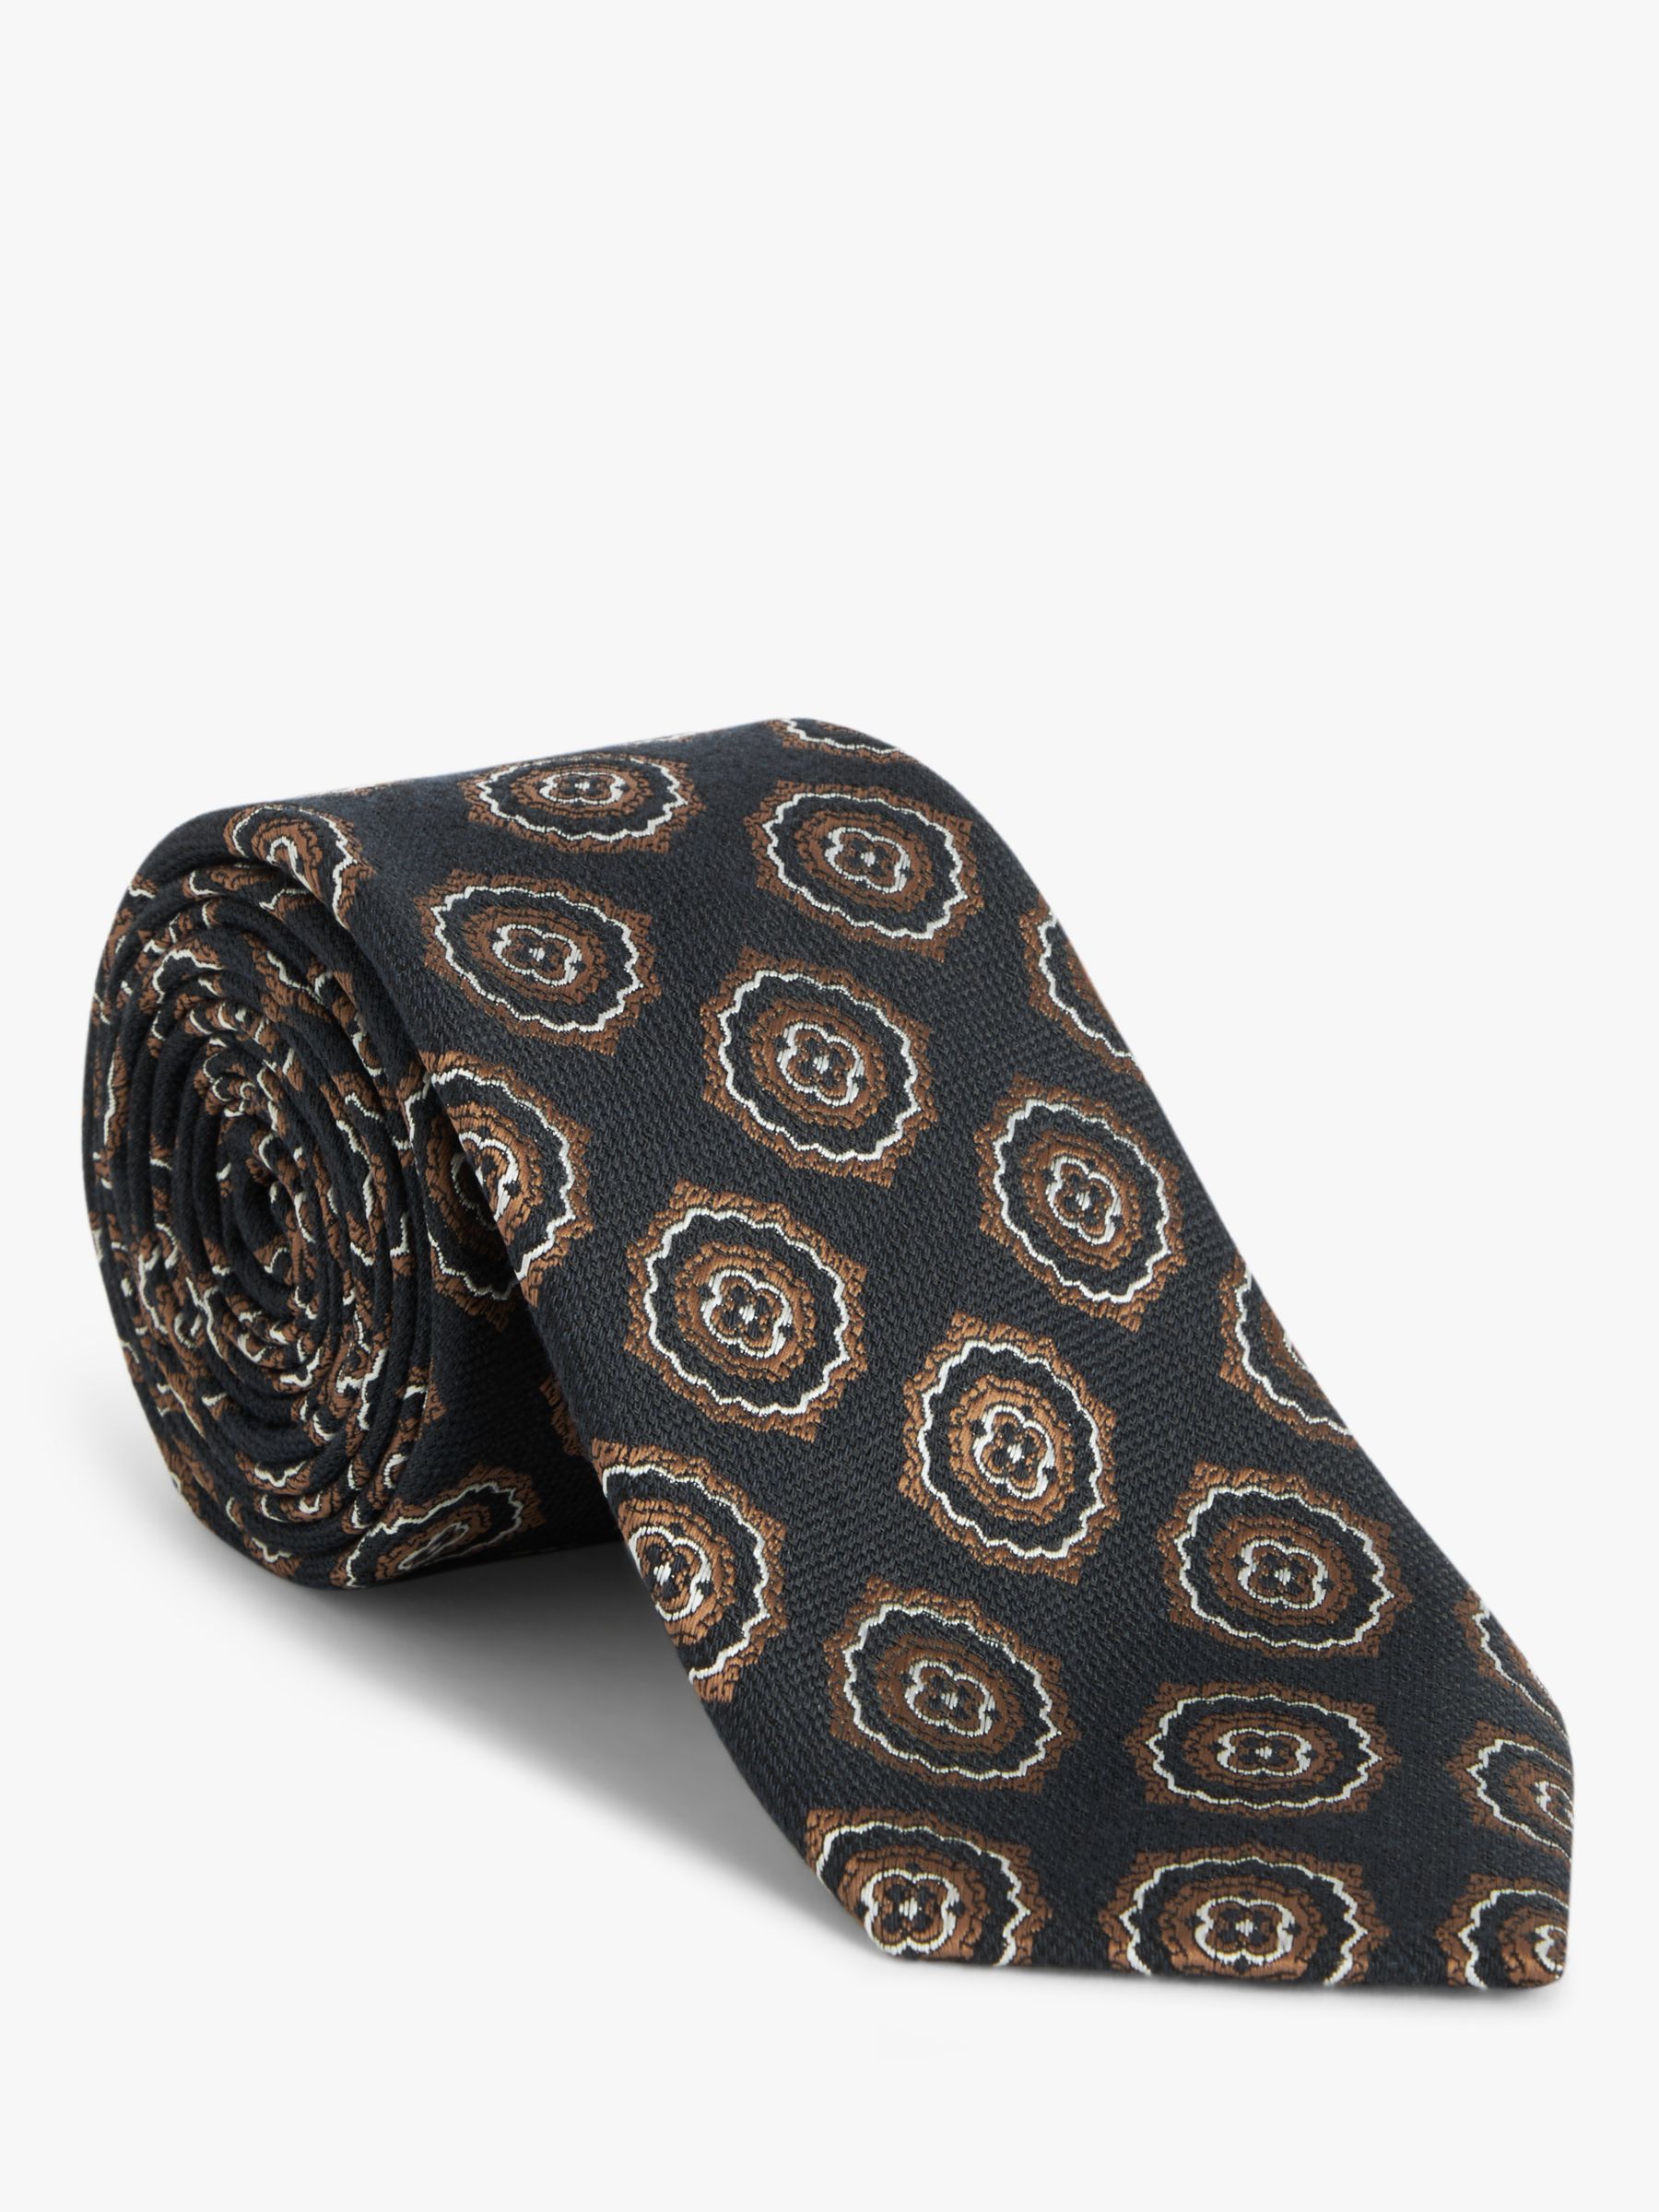 John Lewis Large Foulard Tie, Navy